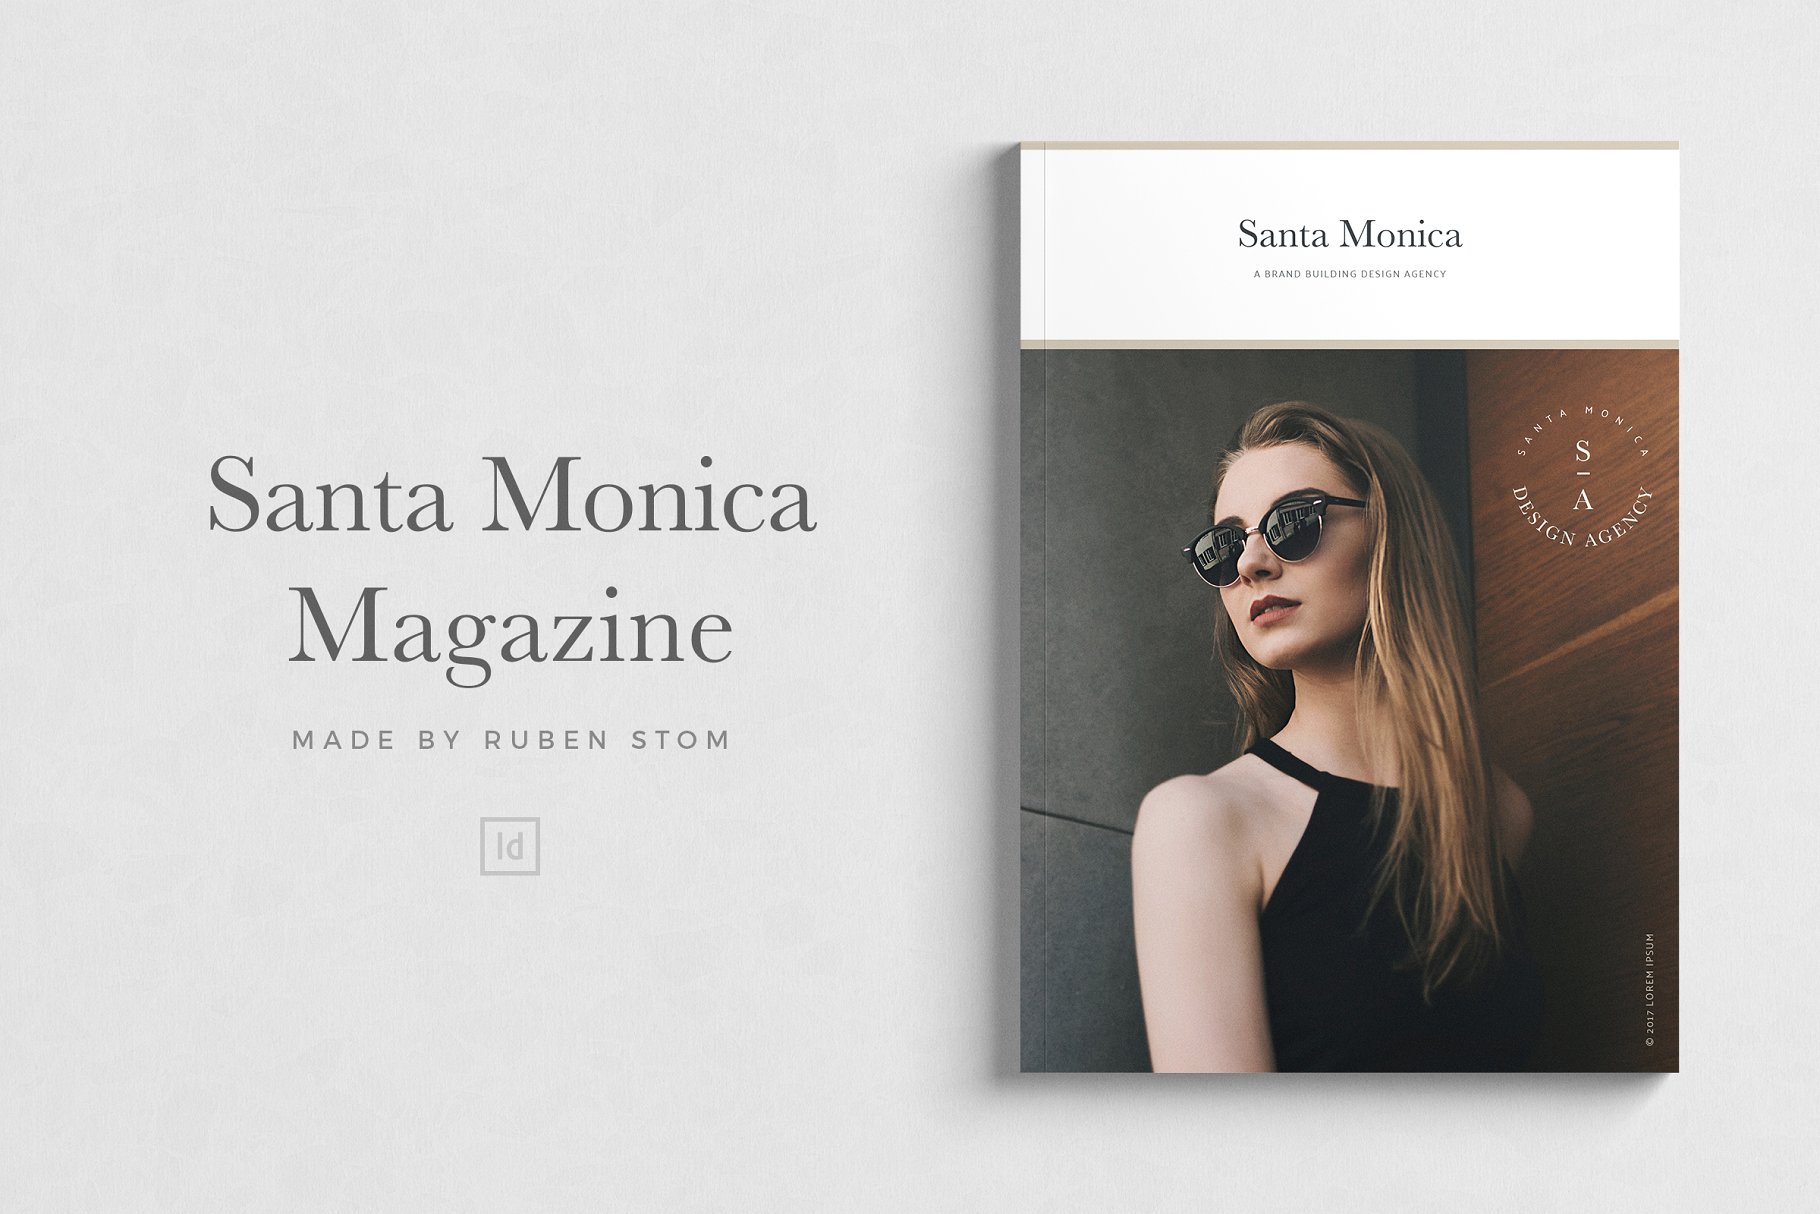 精美杂志模板 Santa Monica Magazine Template插图